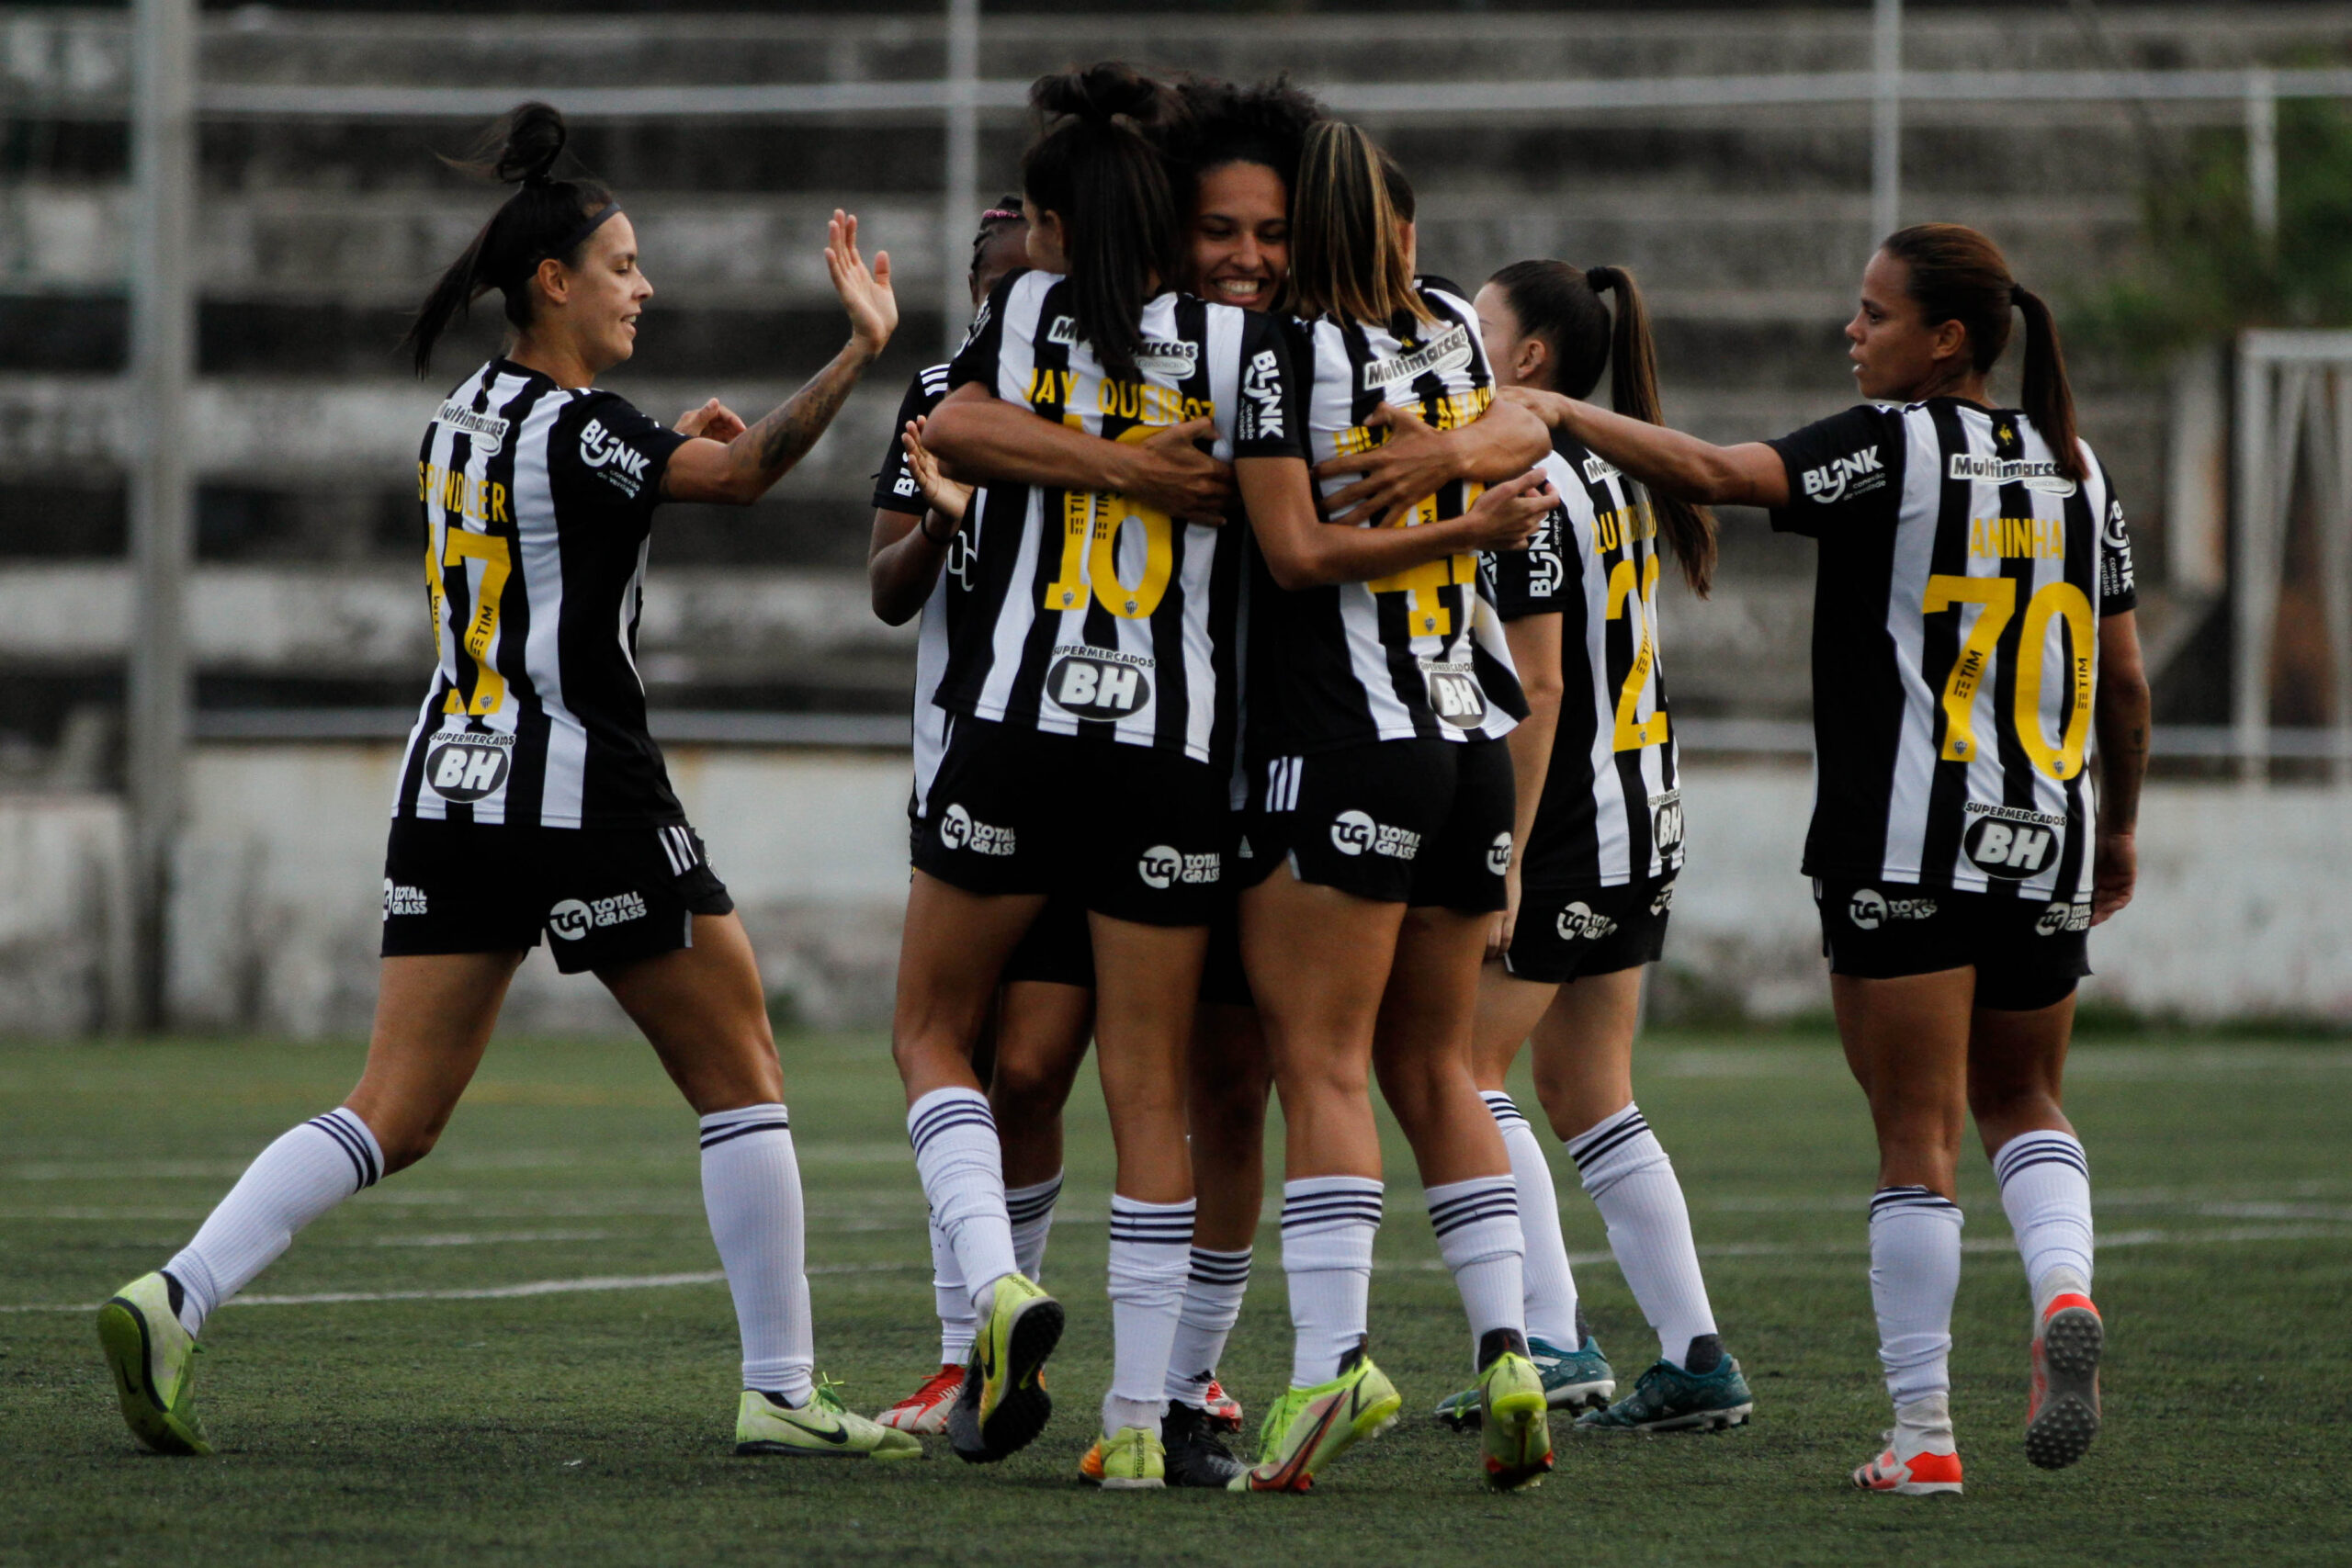 Vingadoras comemoram gol marcado por Aila contra o Araguari. Foto: Fabio Pinel/Atlético